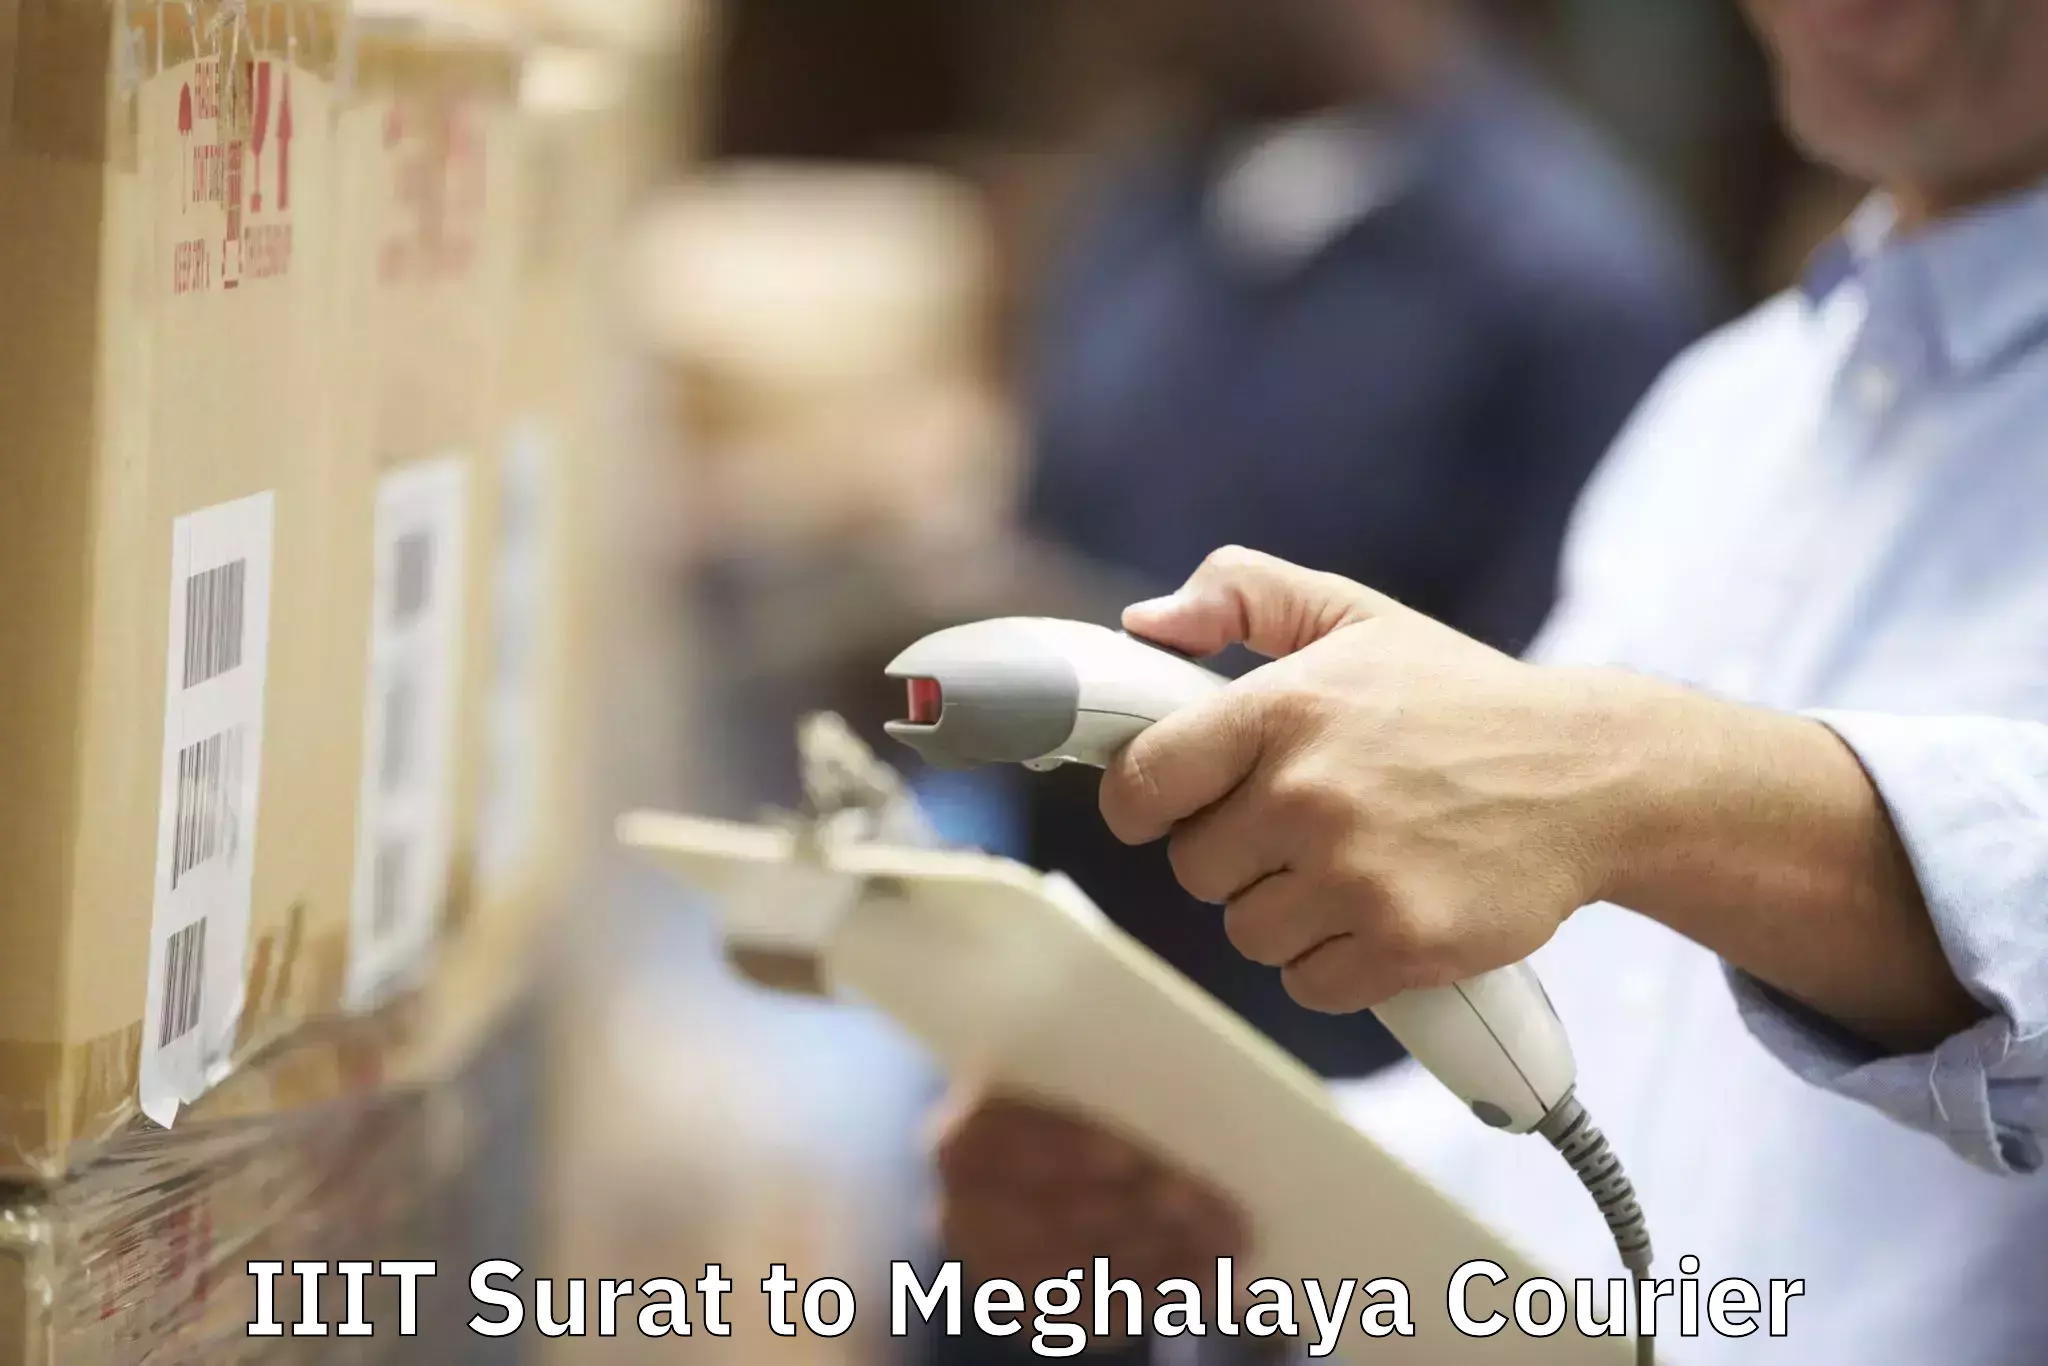 Reliable movers IIIT Surat to Meghalaya